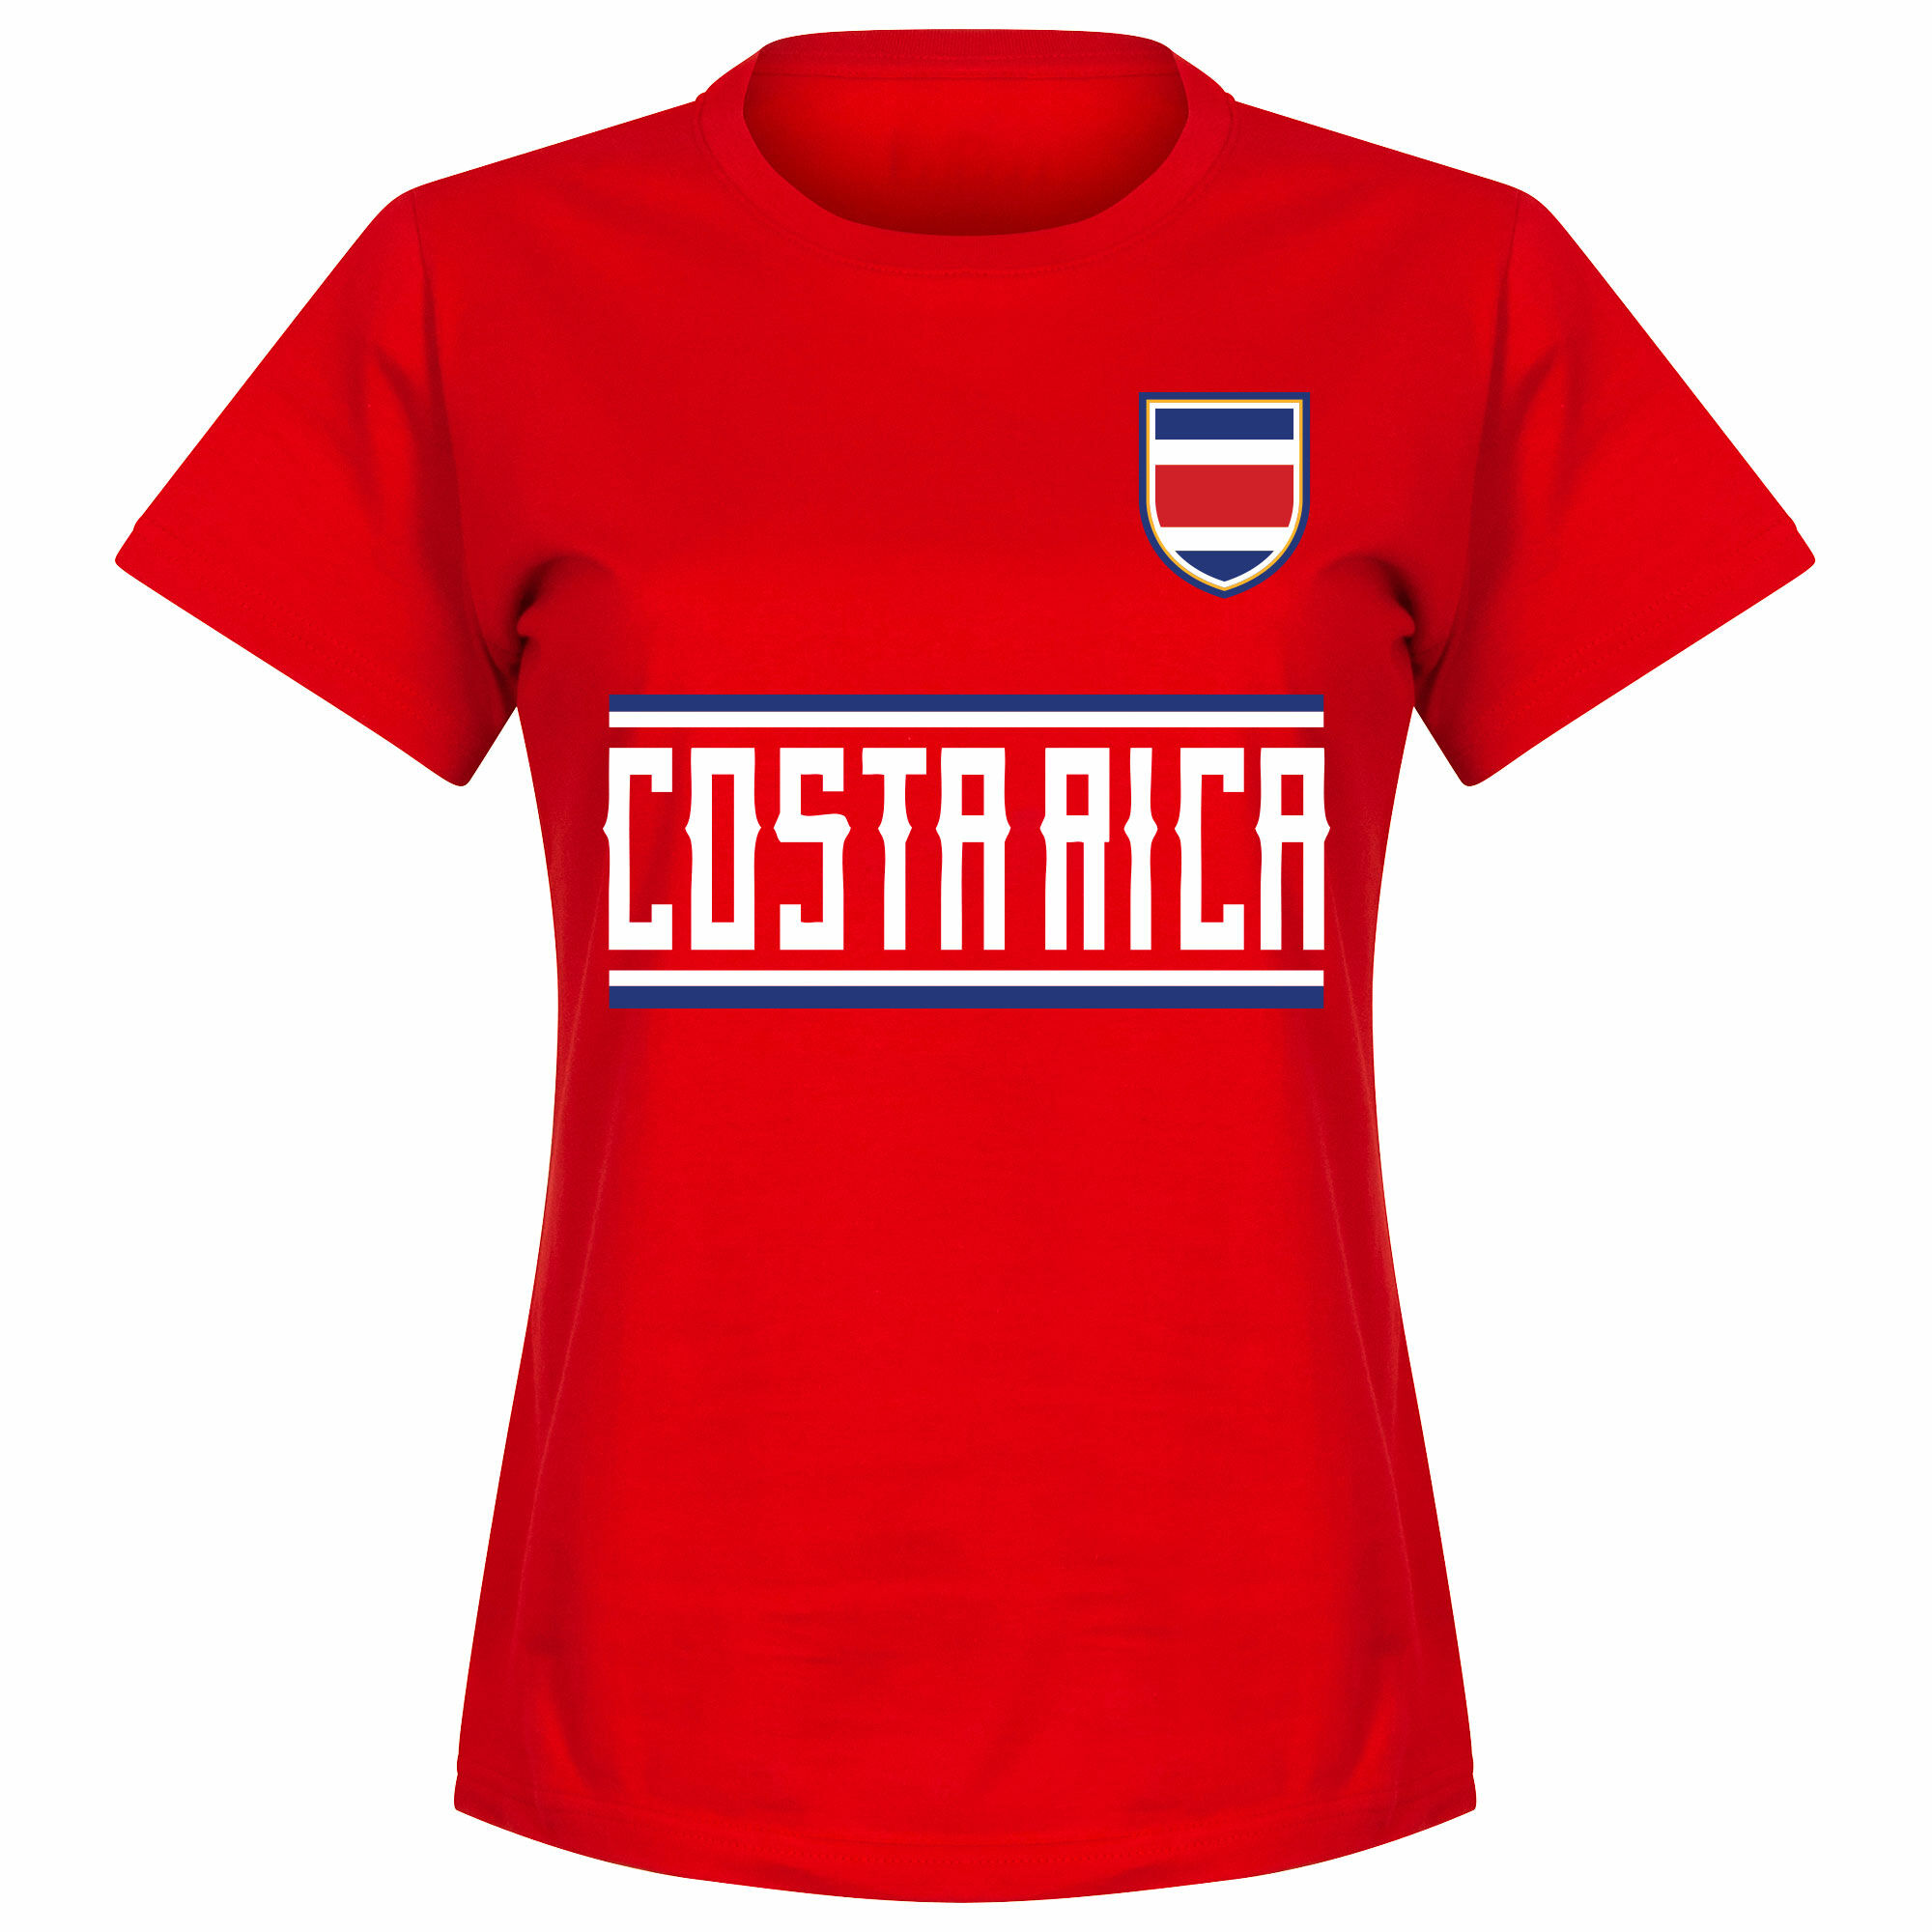 Kostarika - Tričko dámské - červené